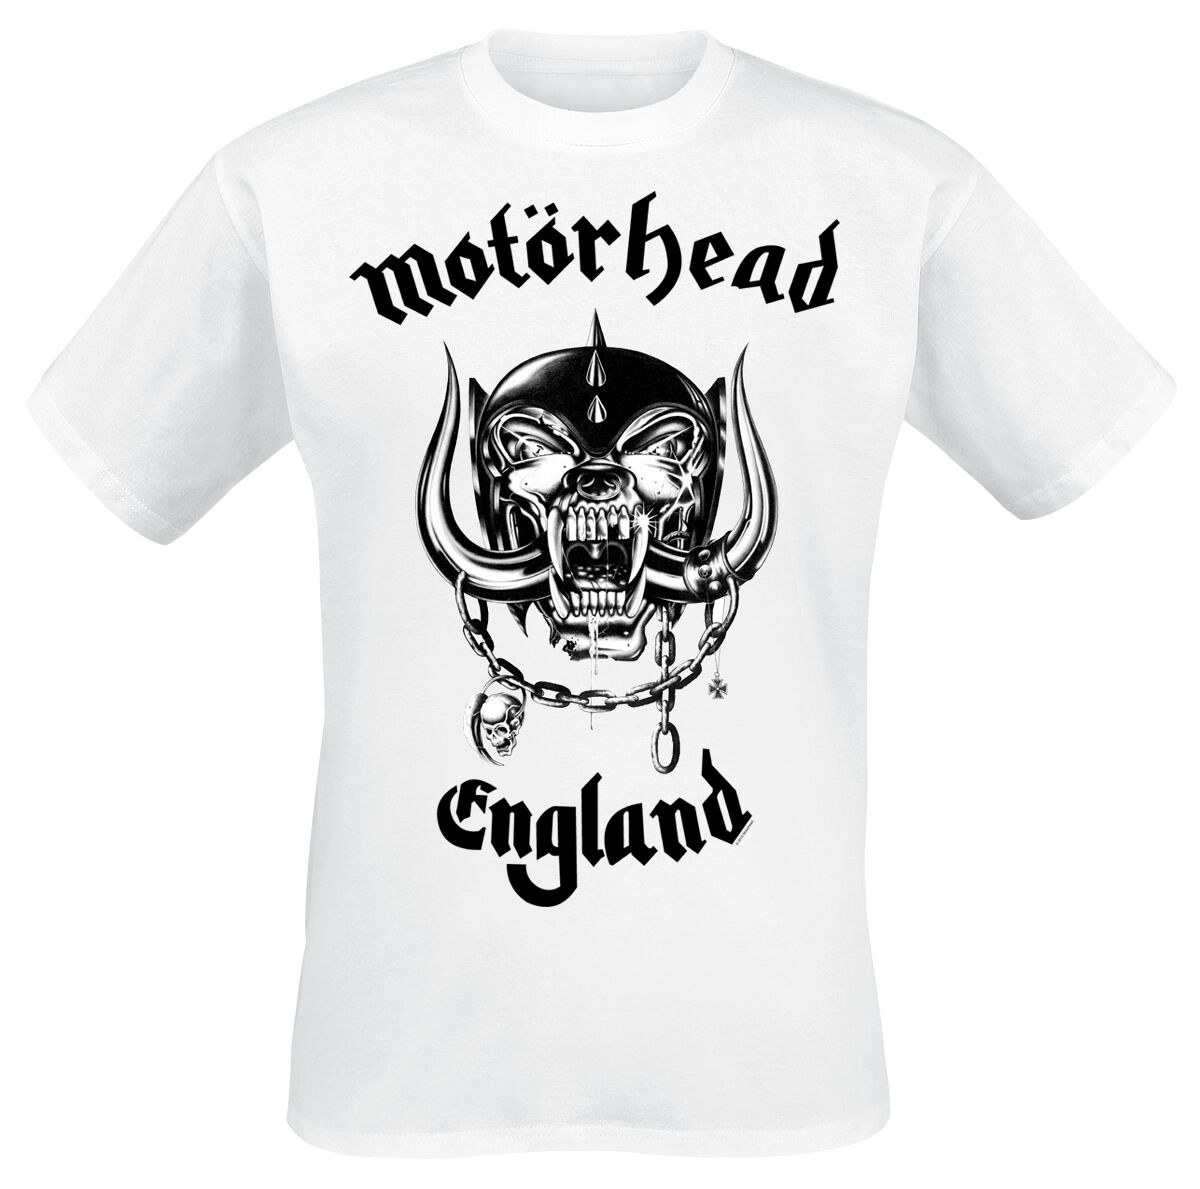 Motörhead T-Shirt - England - S bis XXL - für Männer - Größe L - weiß  - Lizenziertes Merchandise!